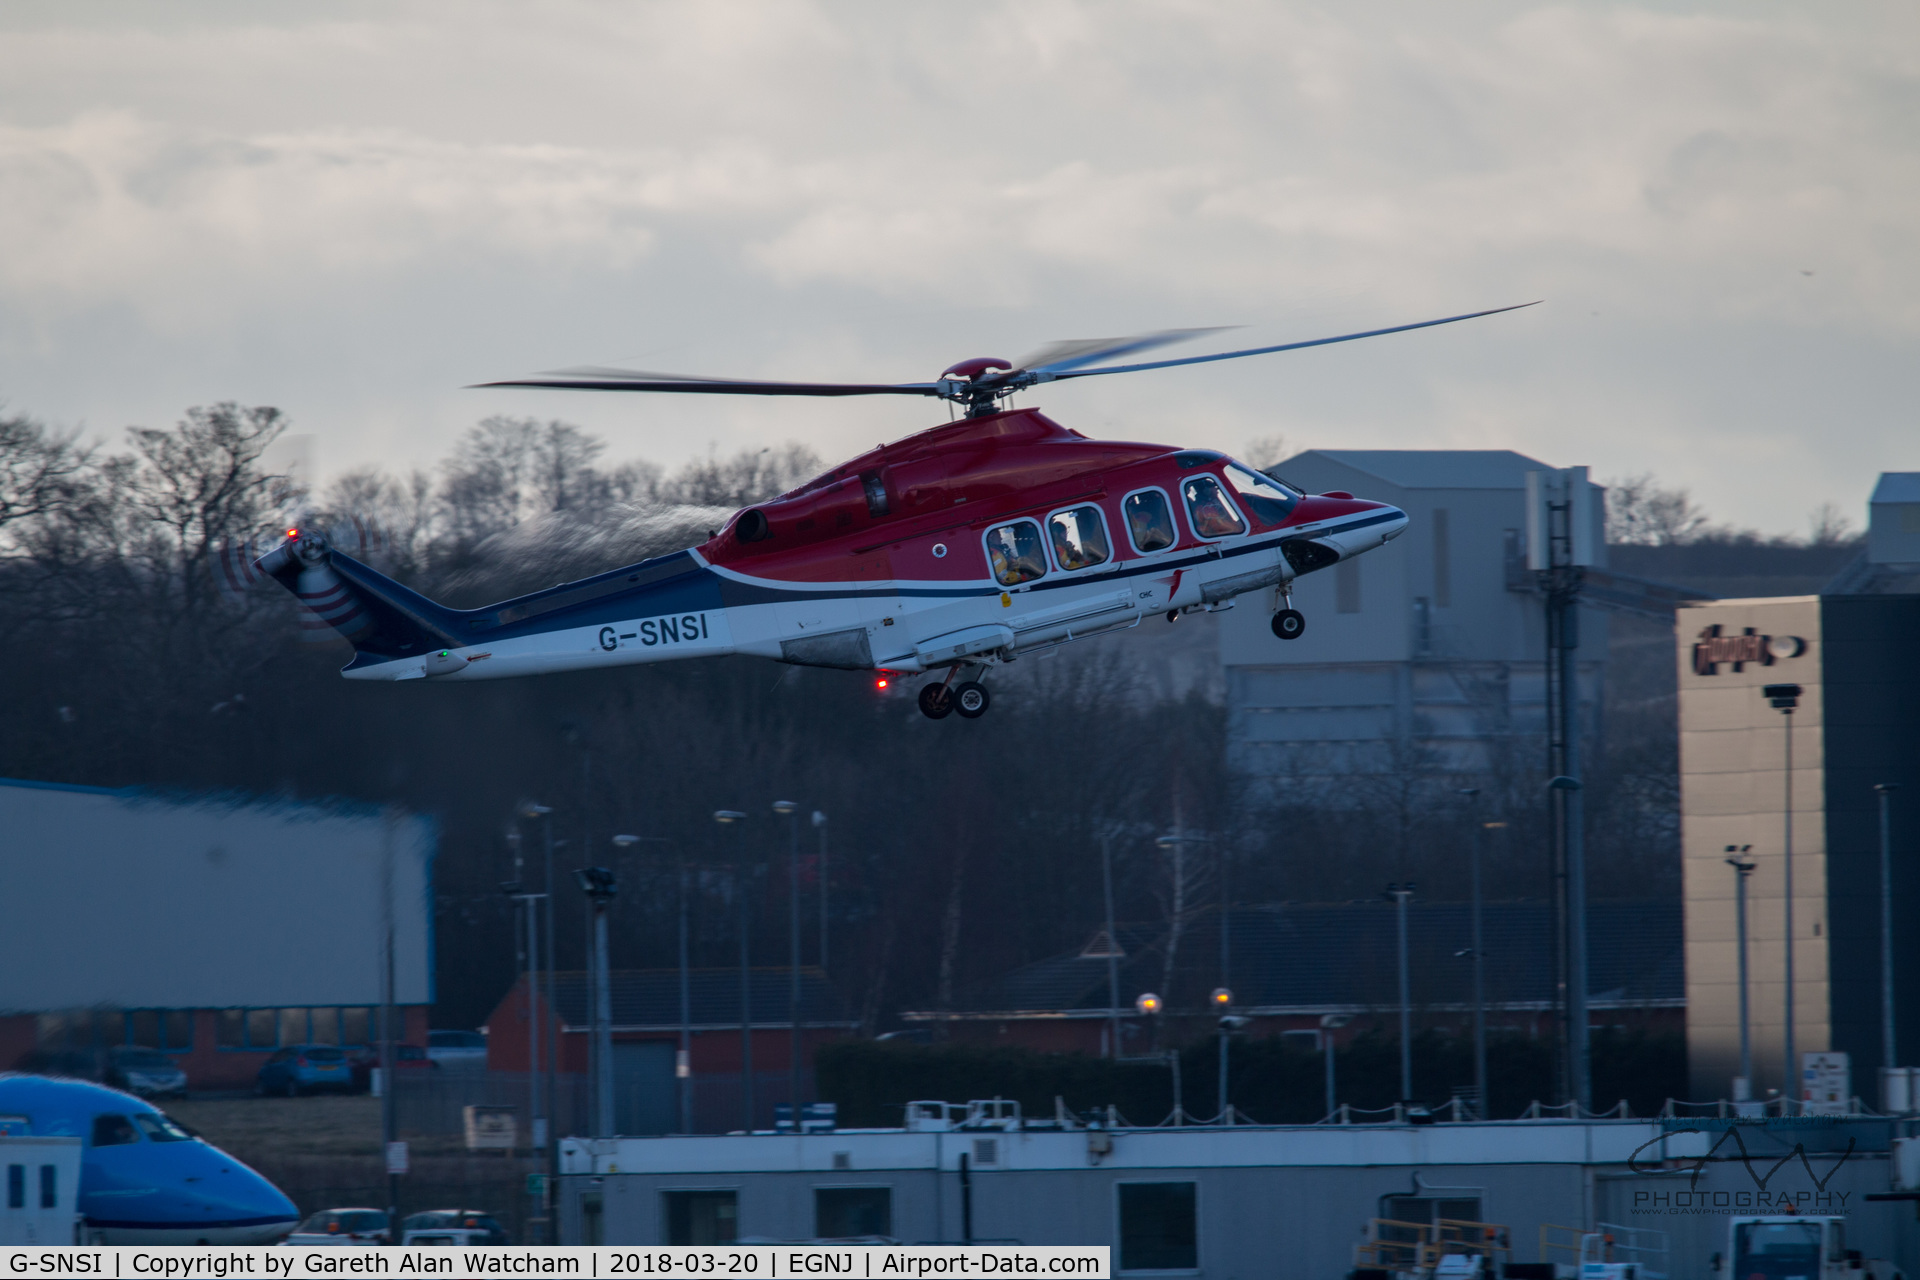 G-SNSI, 2013 AgustaWestland AW-139 C/N 31479, Landing at Humberside Airport